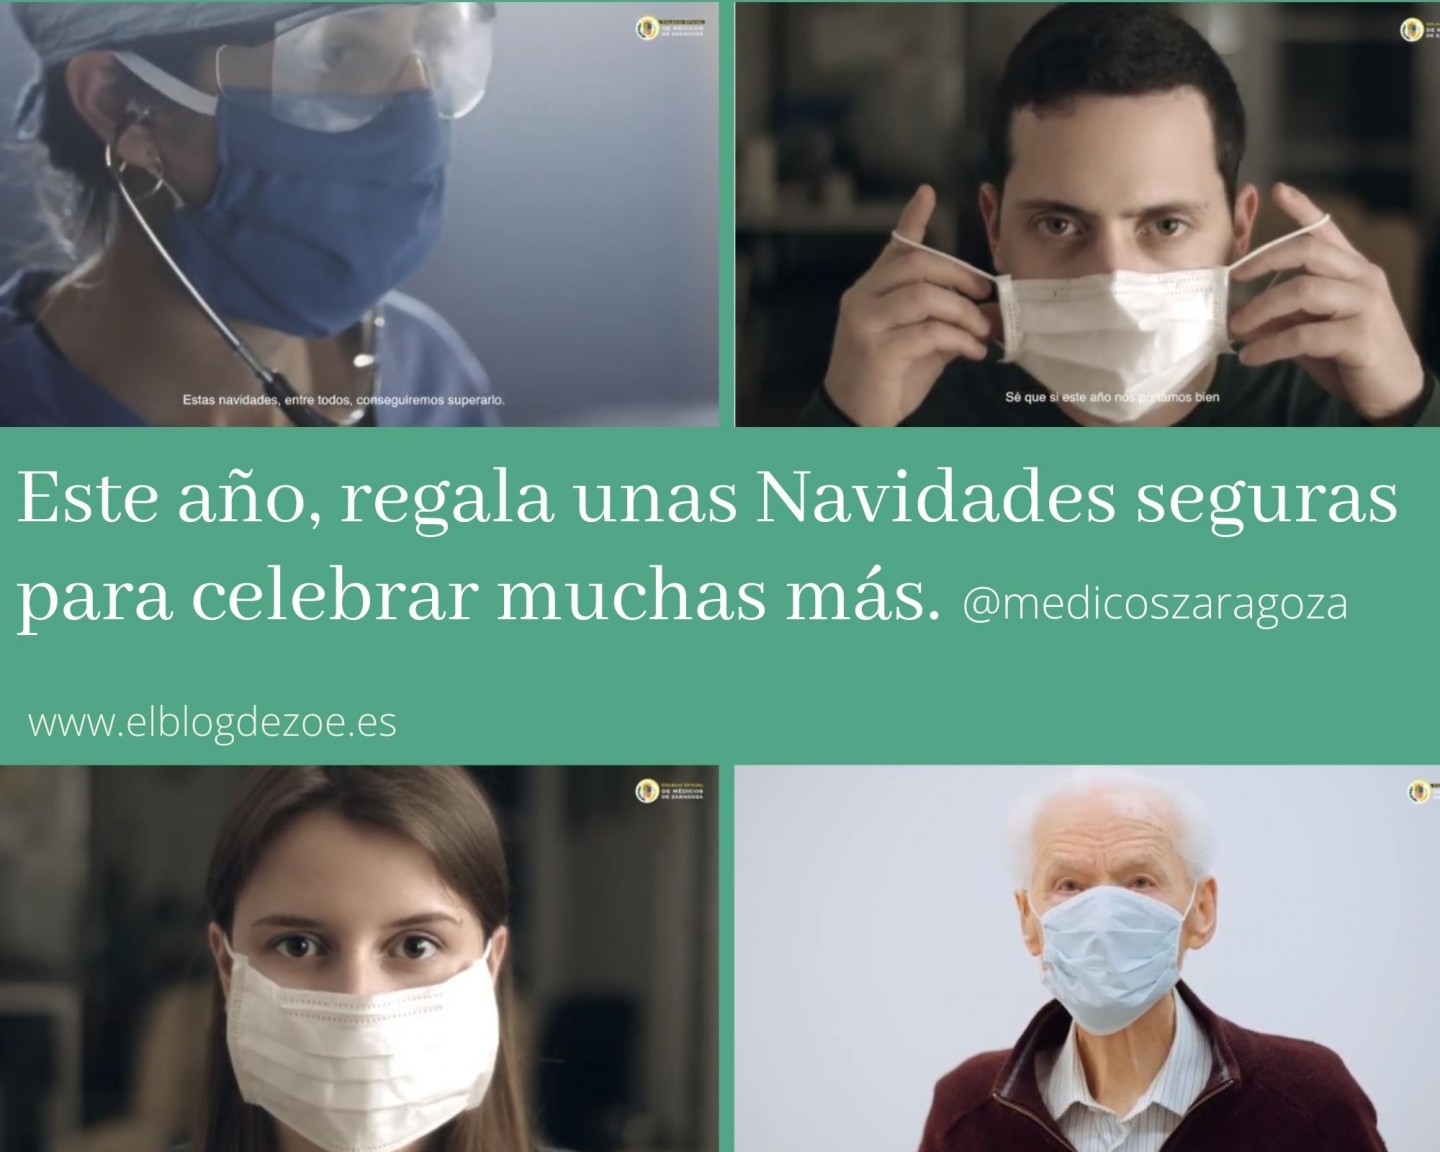 La esperanza para las personas que sufren apnea del sueño: un dispositivo  del Hospital Clínico de Madrid podría curarla